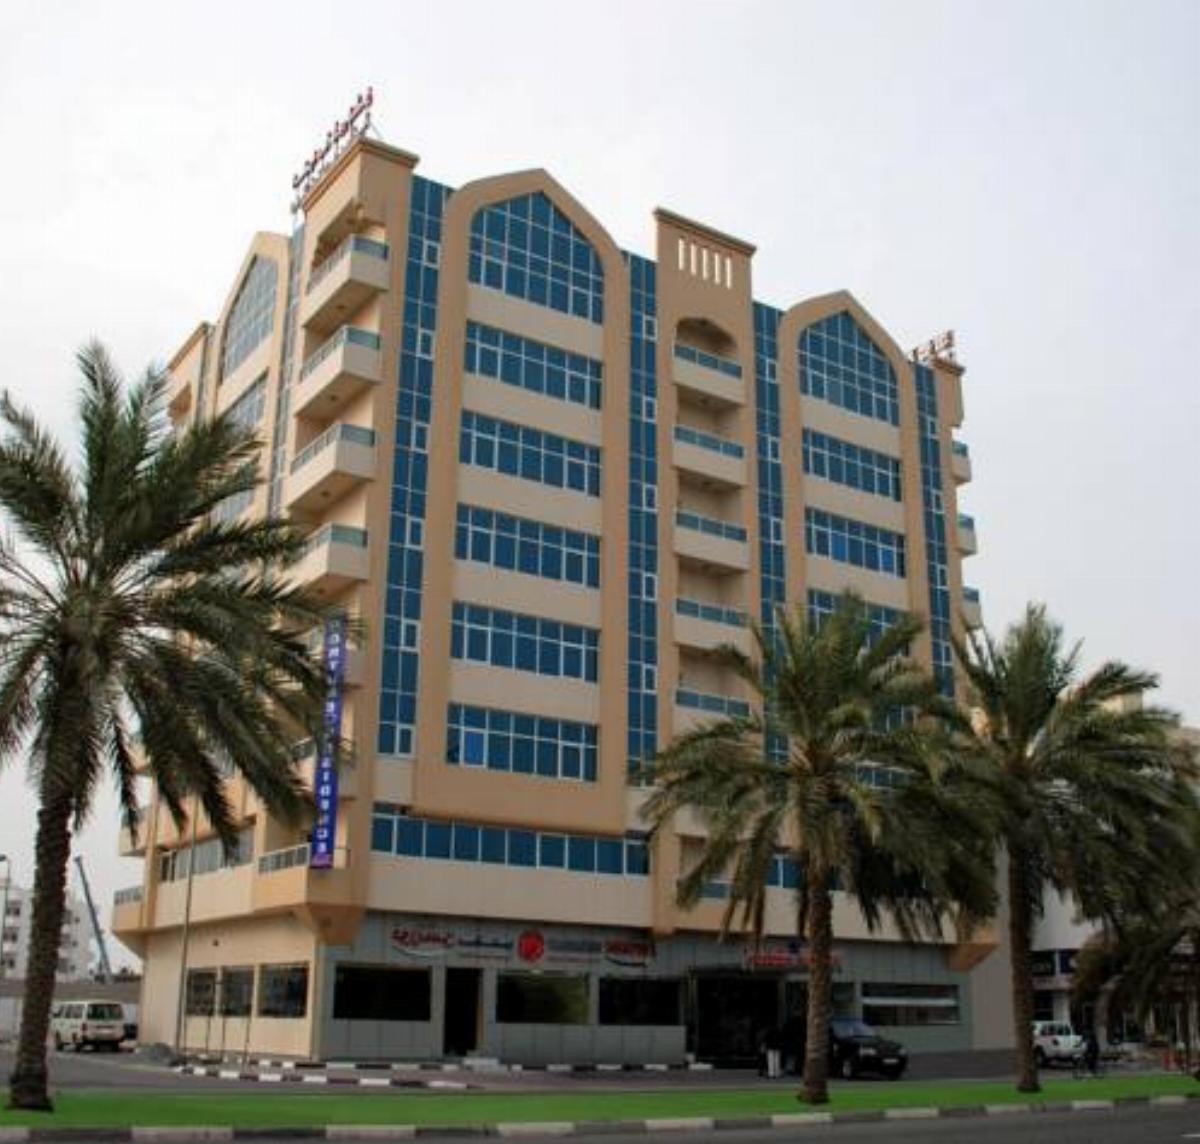 Fortune Hotel Apartment - Fujairah Hotel Fujairah United Arab Emirates